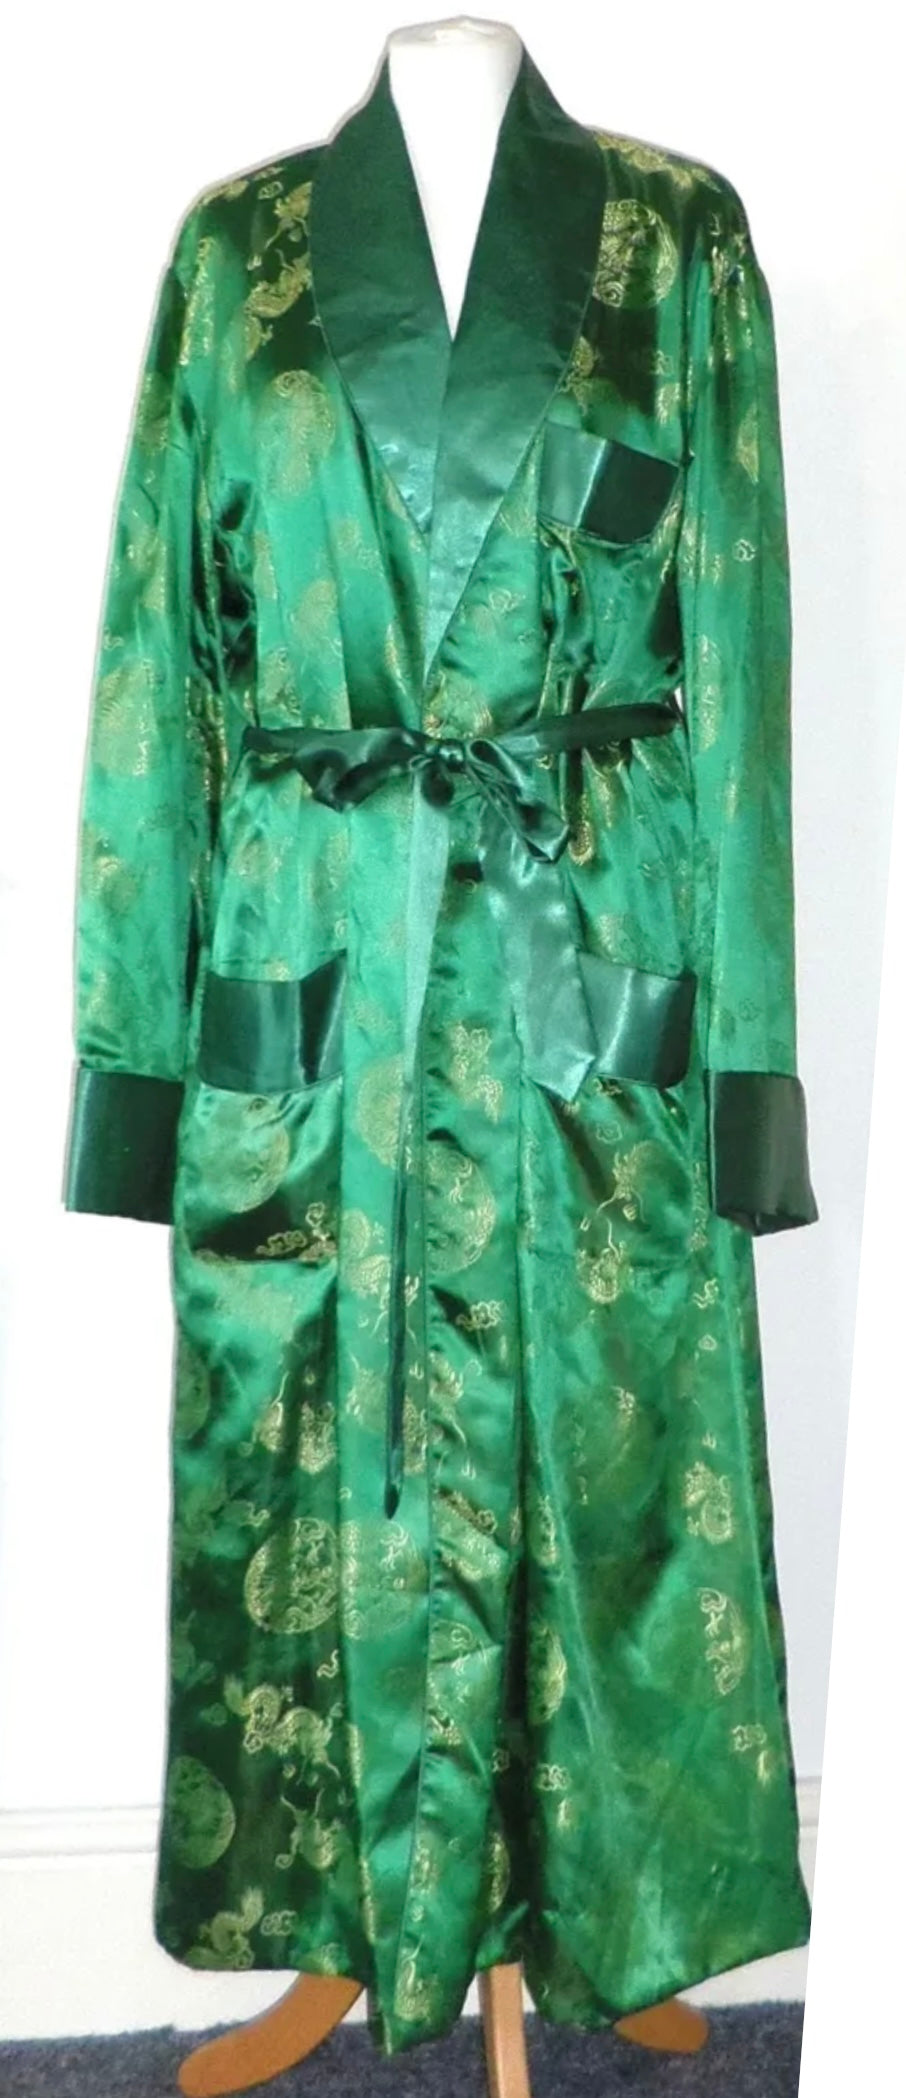 Emerald green vintage brocade XL robe